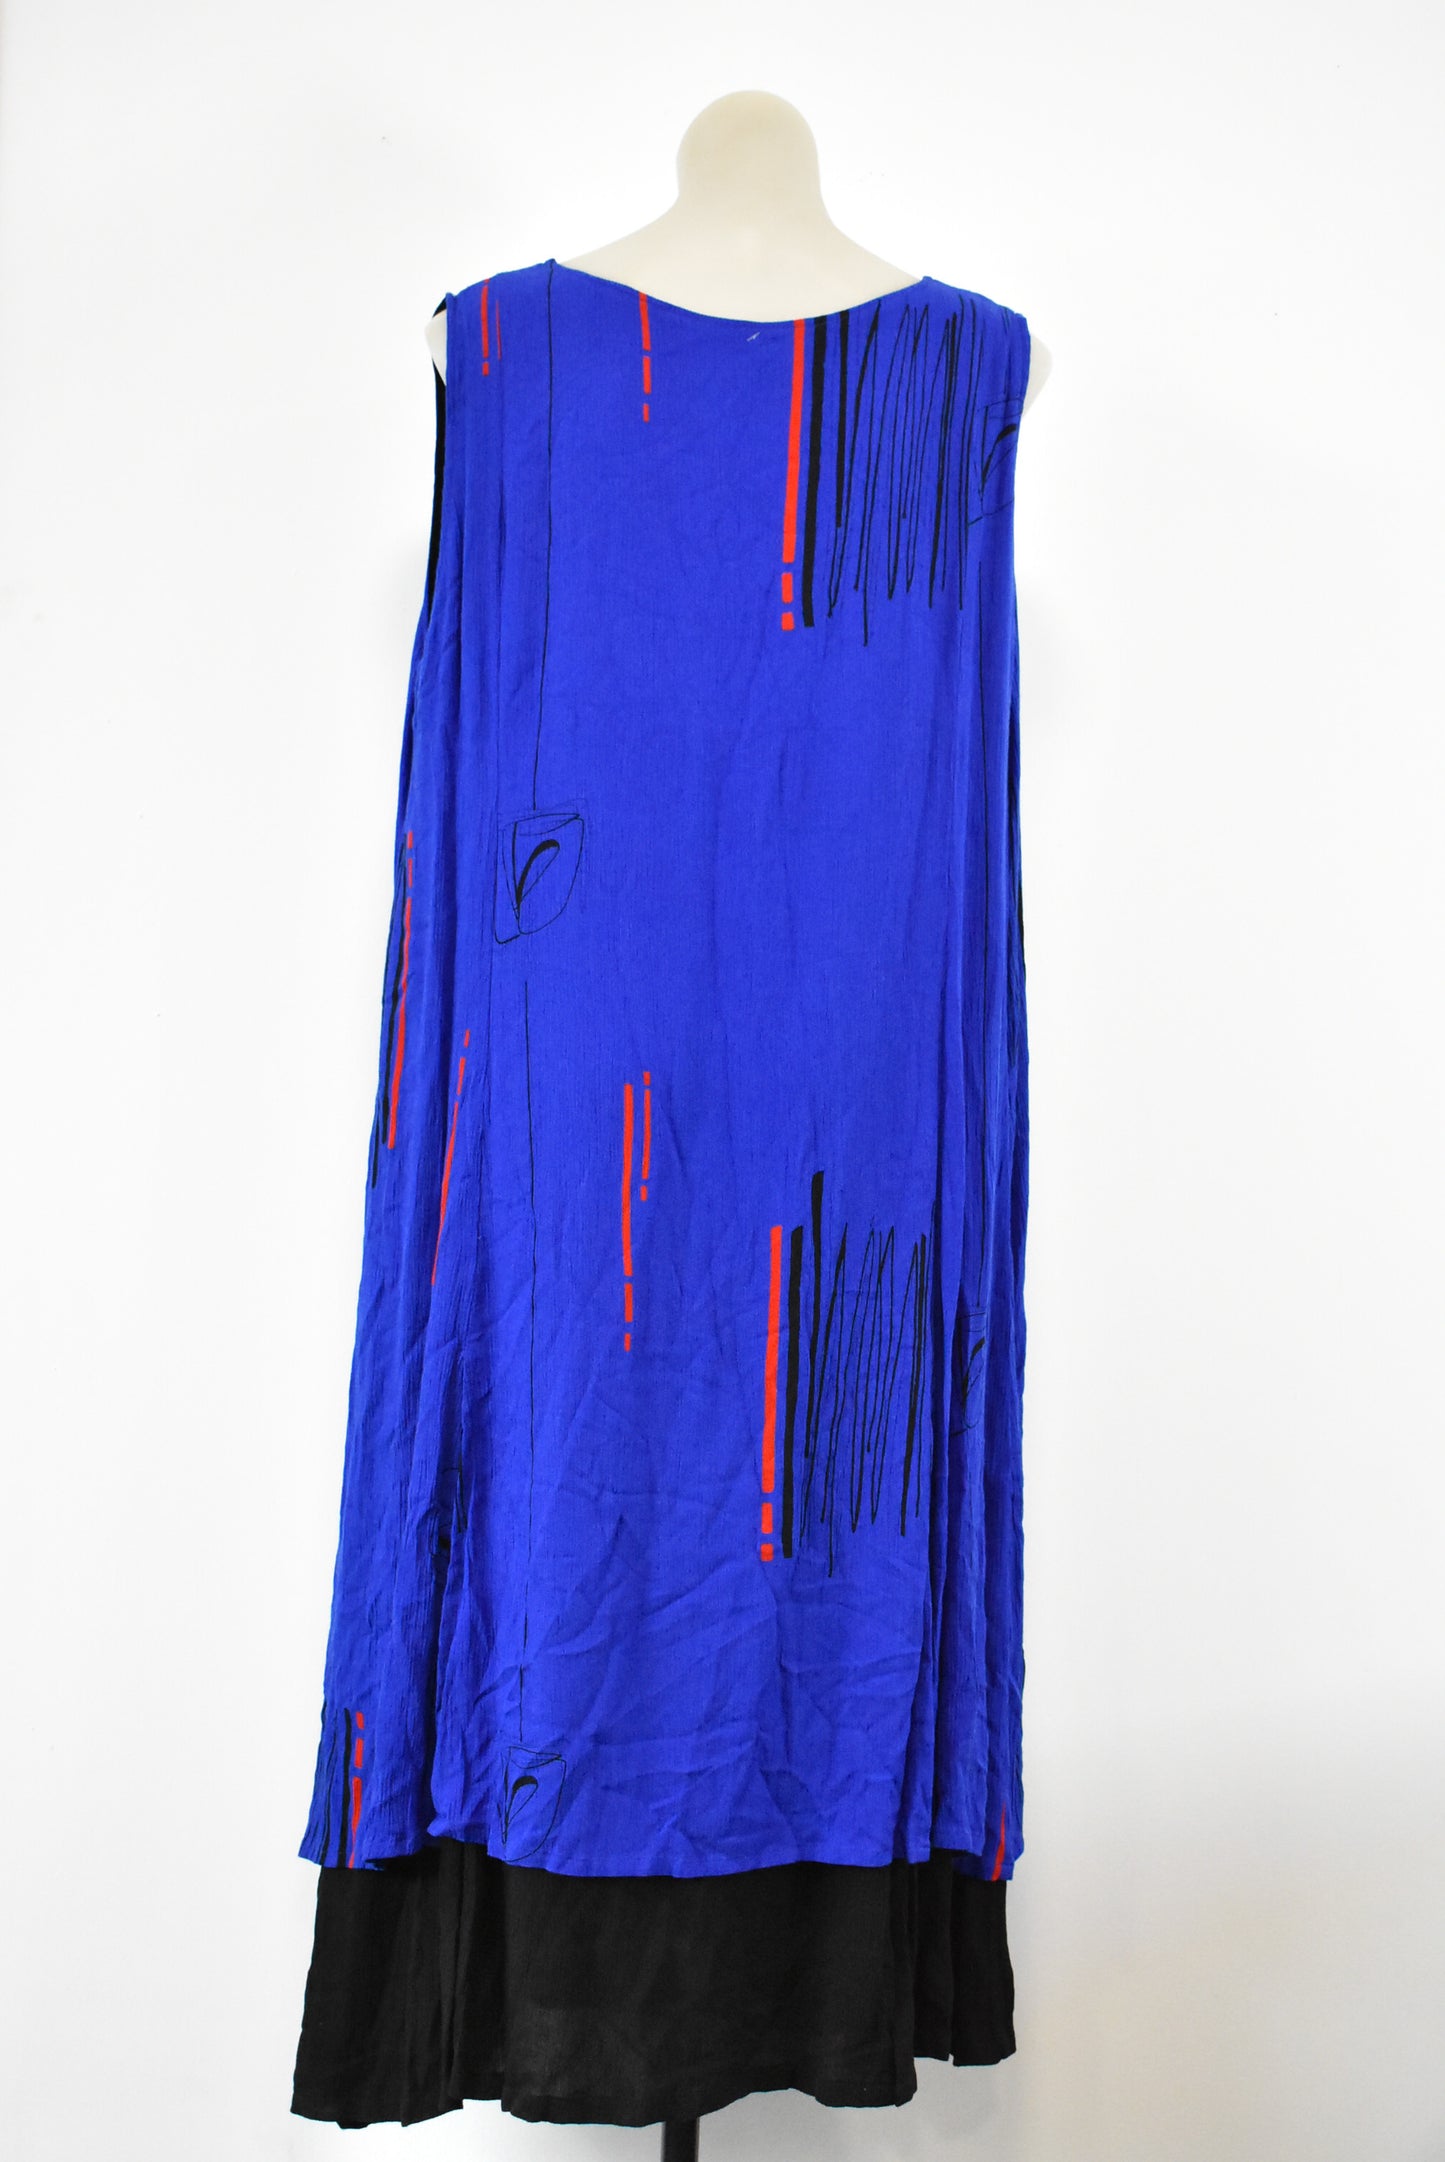 Zenzo artsy royal blue dress, L